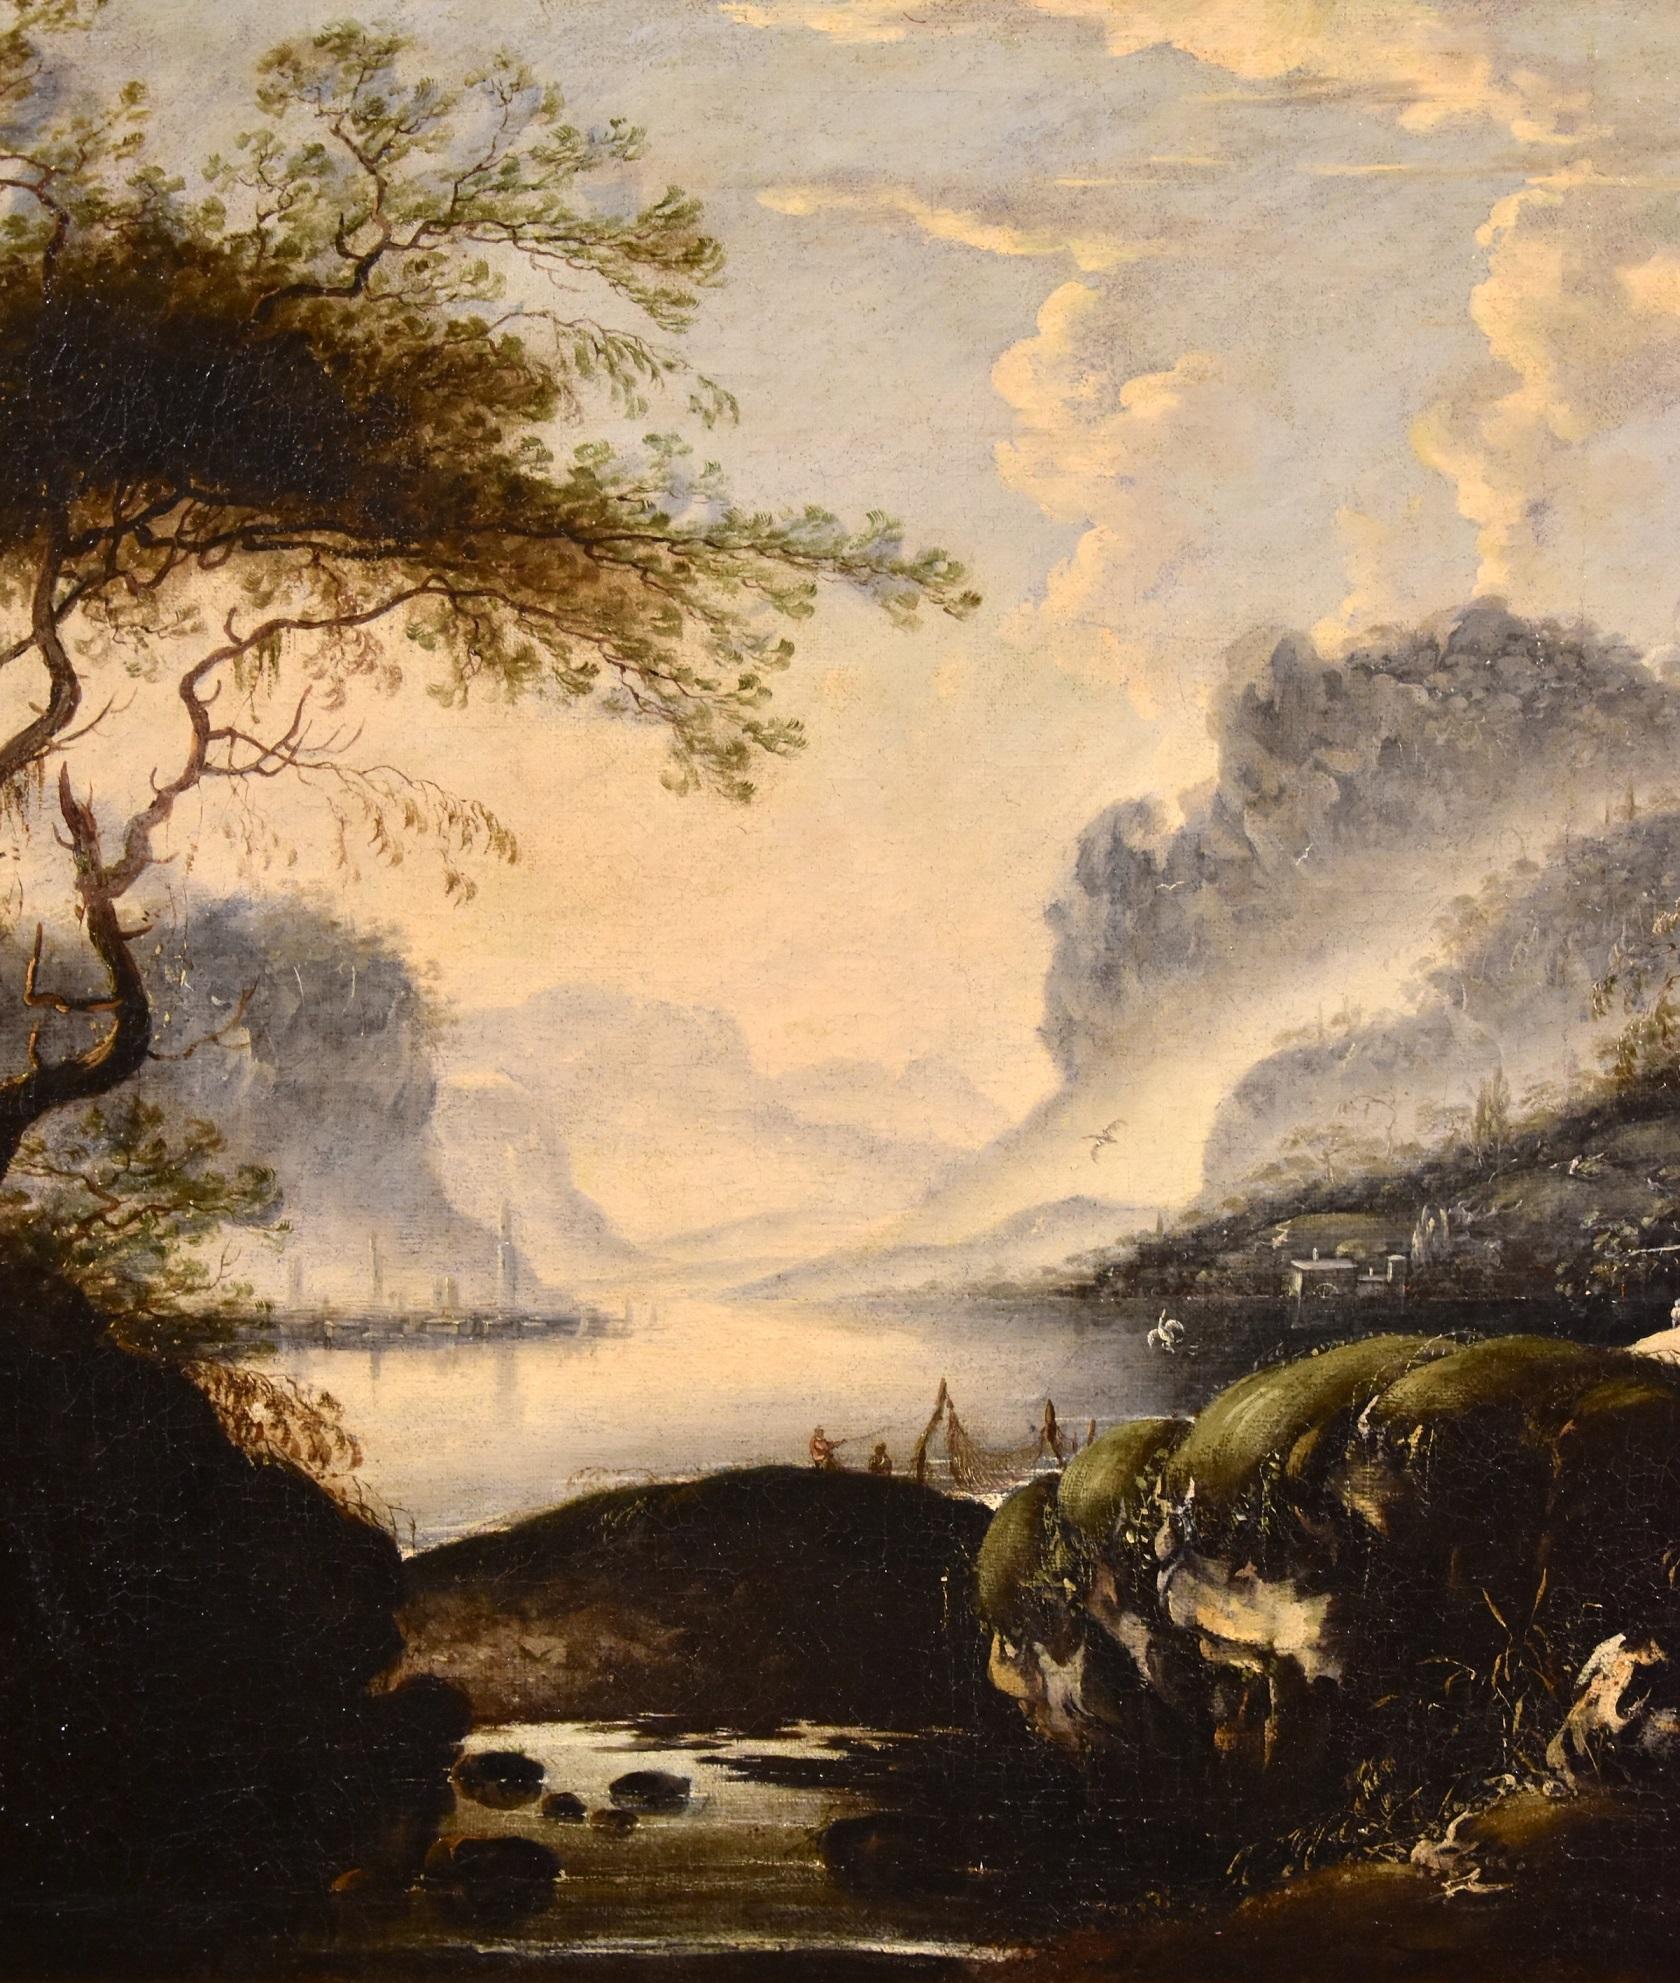 De Jode Winter Landschaftsgemälde Öl auf Leinwand Alter Meister 17. Jahrhundert Flämische Kunst (Beige), Landscape Painting, von Hans de Jode (The Hague, 1630 - Vienna, 1663)